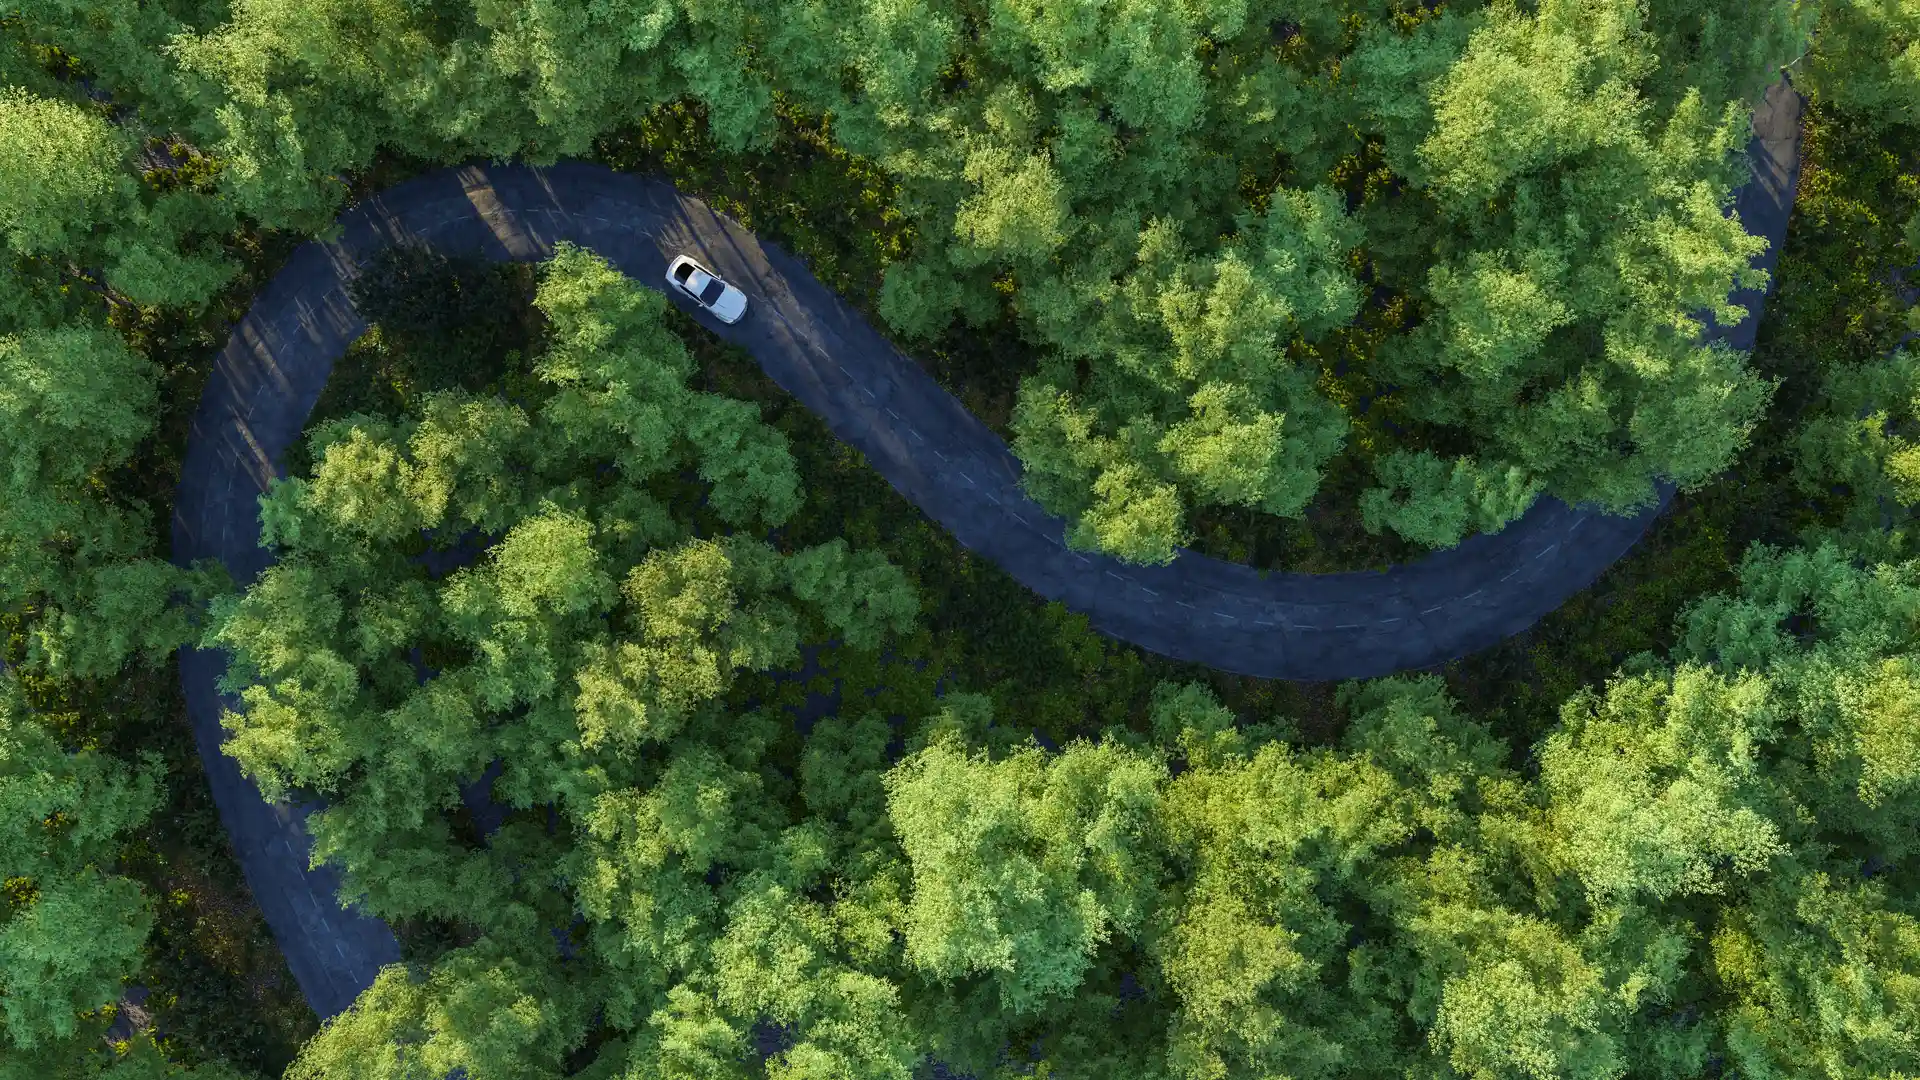 Vista aerea de un coche circulando por un bosque que representa el seguro de coche de AMV